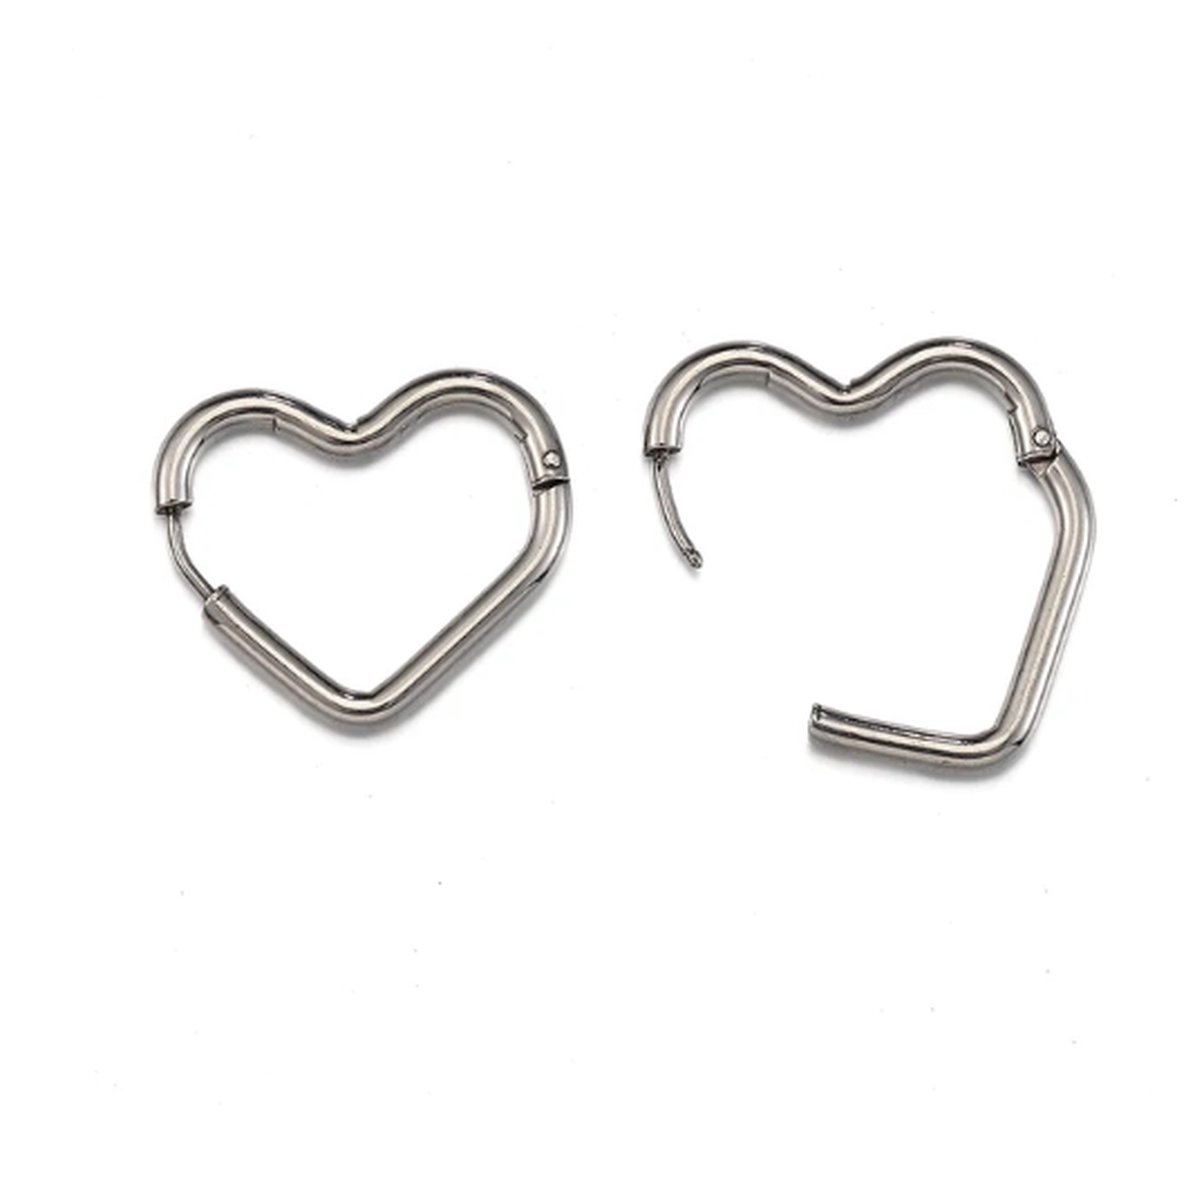 Oorbellen - oorringen - hart - zilver - stainless steel - verkleuren niet - perfecte basic - makkelijk in en uit doen door kliksluiting